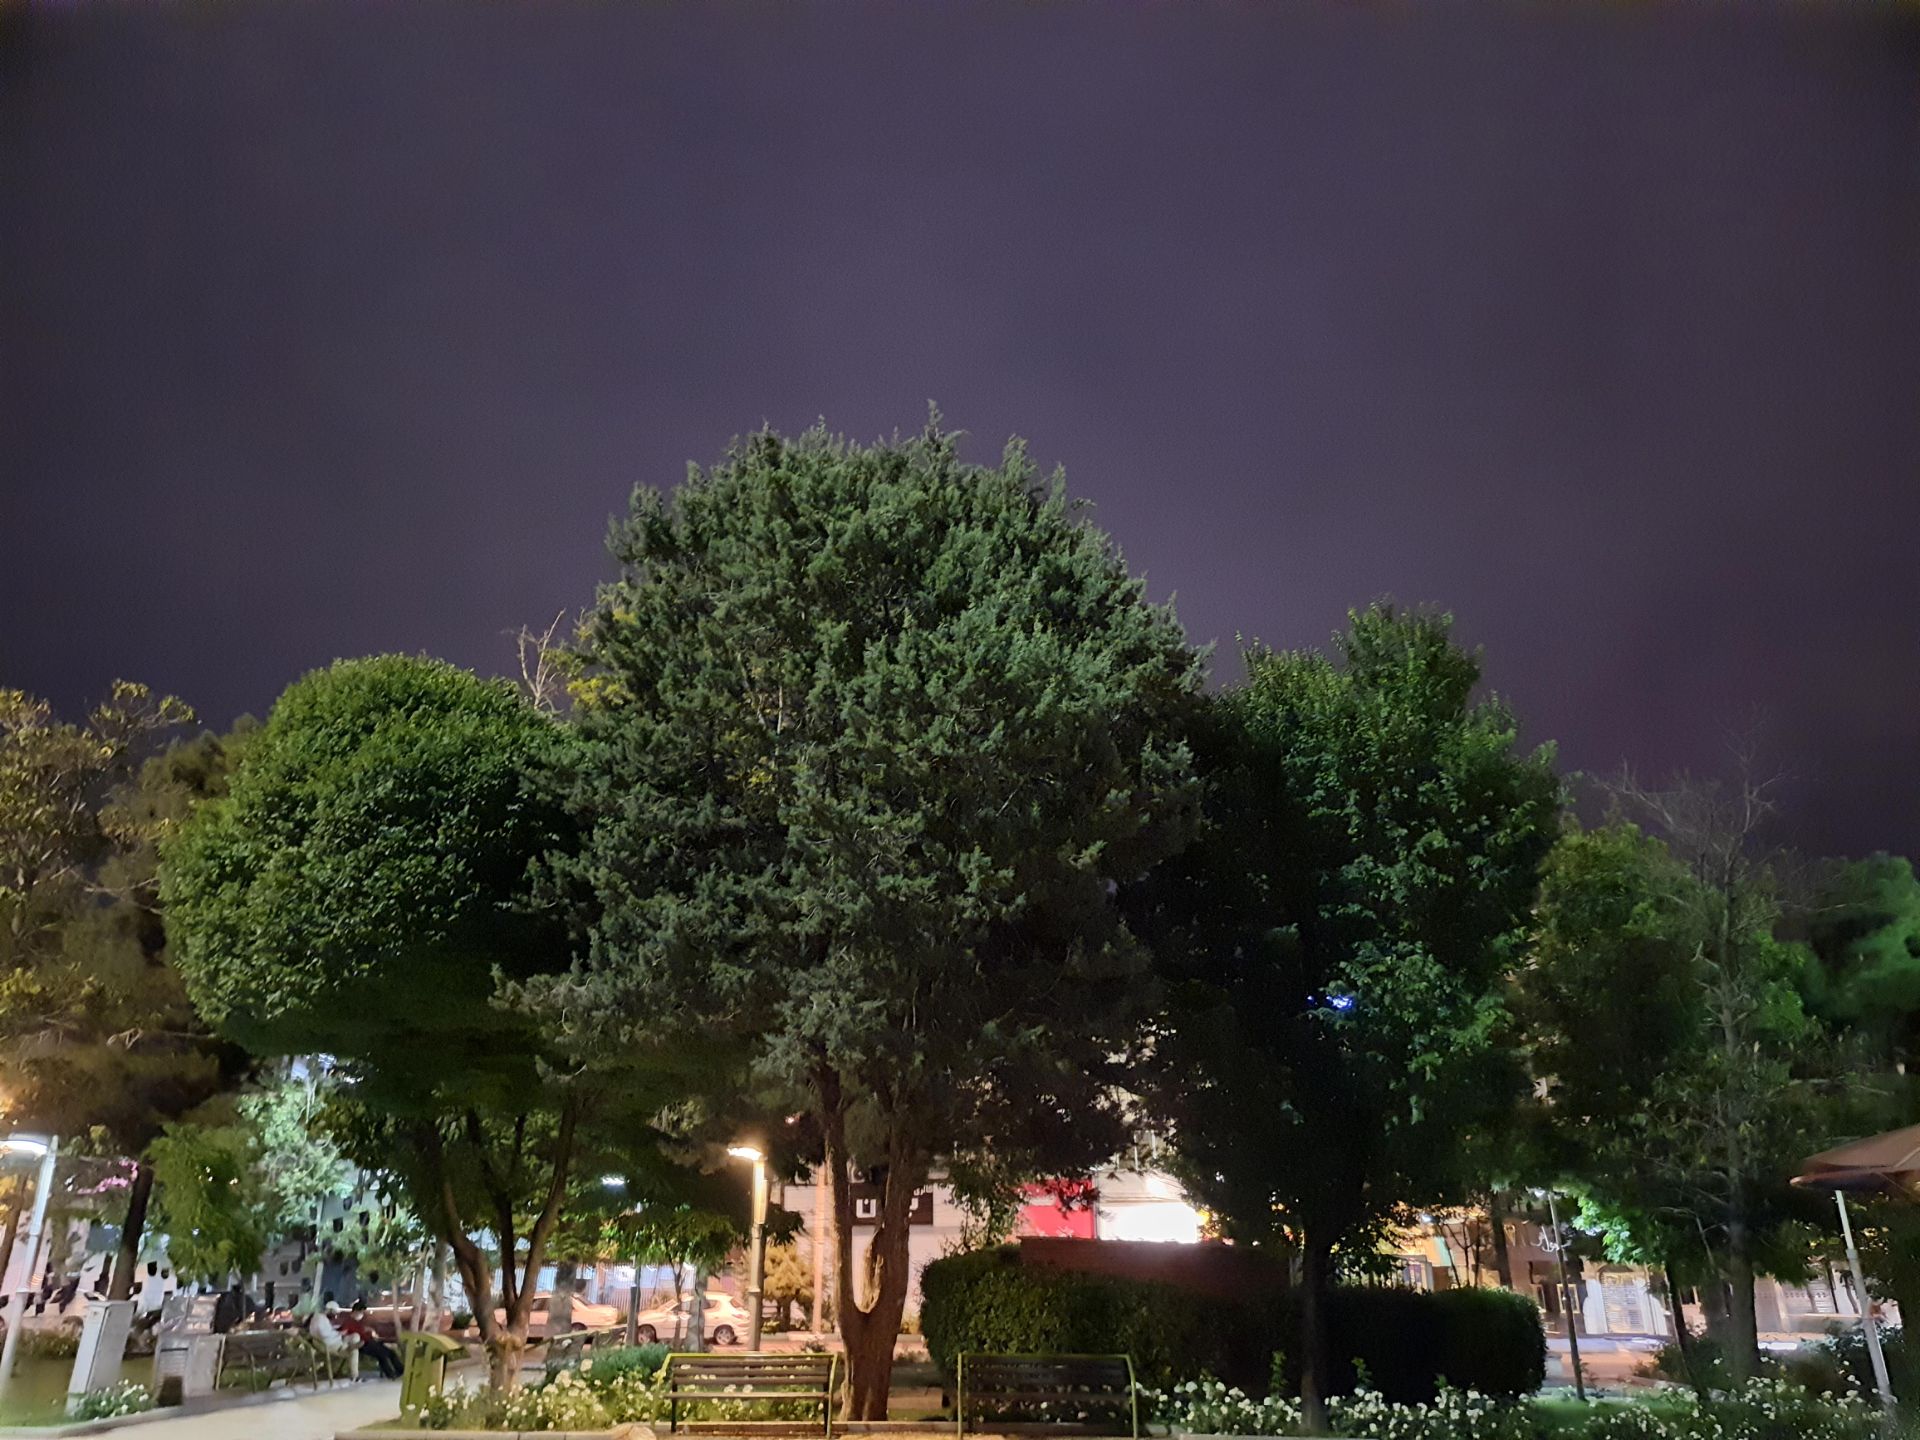 عکس نمونه دوربین اصلی گلکسی M62 سامسونگ در نور کم - درختان پارک میدان هفت حوض نارمک